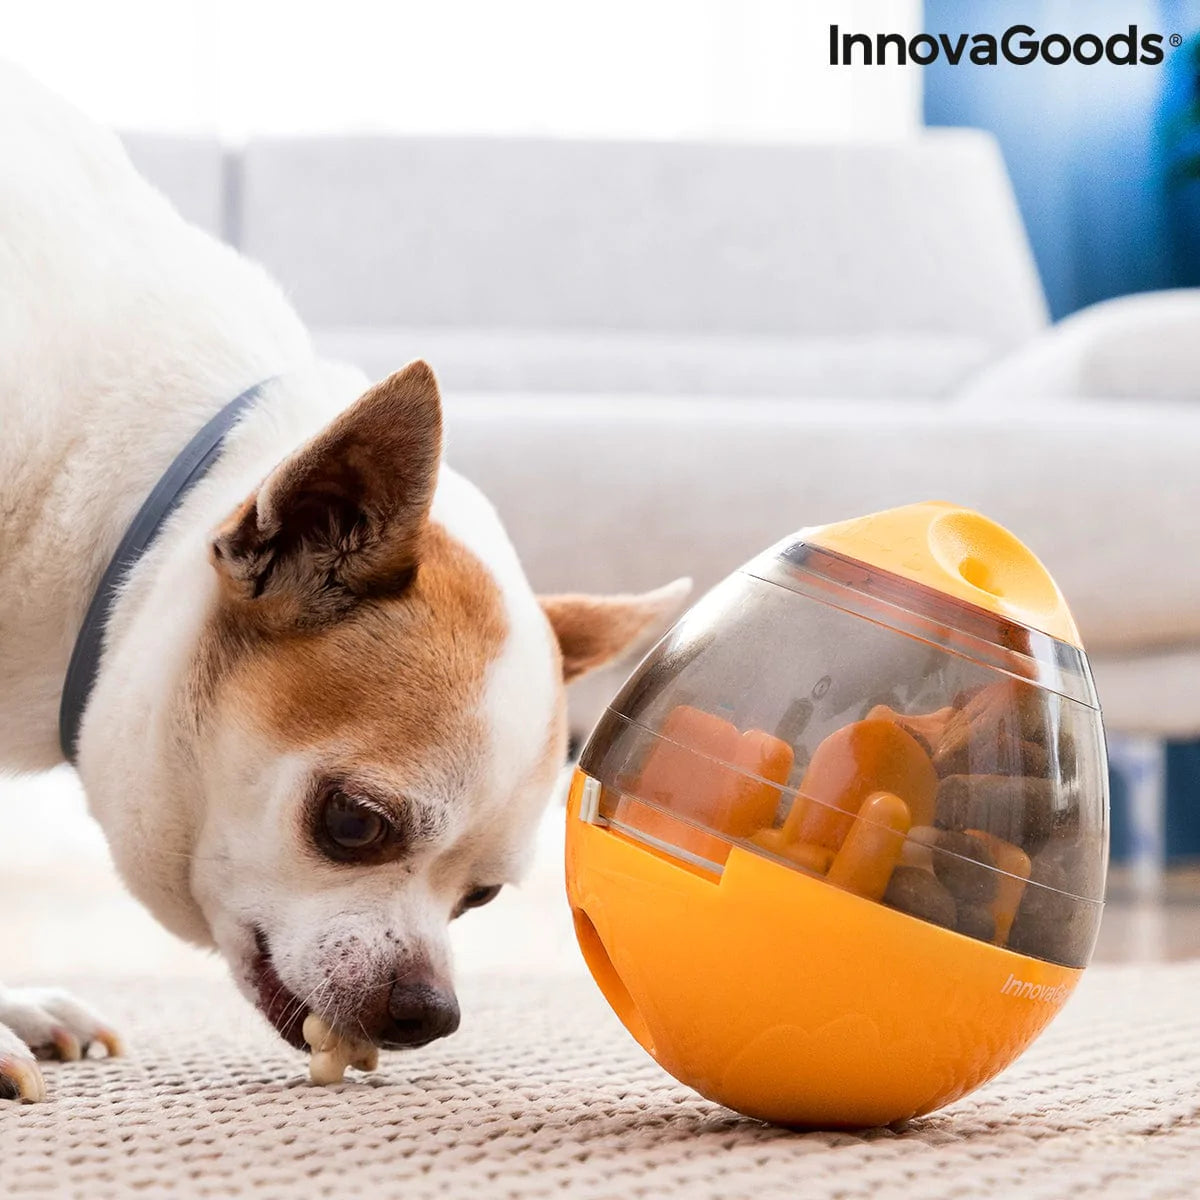 InnovaGoods Heim | Garten > Haustier > Spielzeug 2 in 1 Haustier-Leckerli-Spender Spielzeug Petyt InnovaGoods